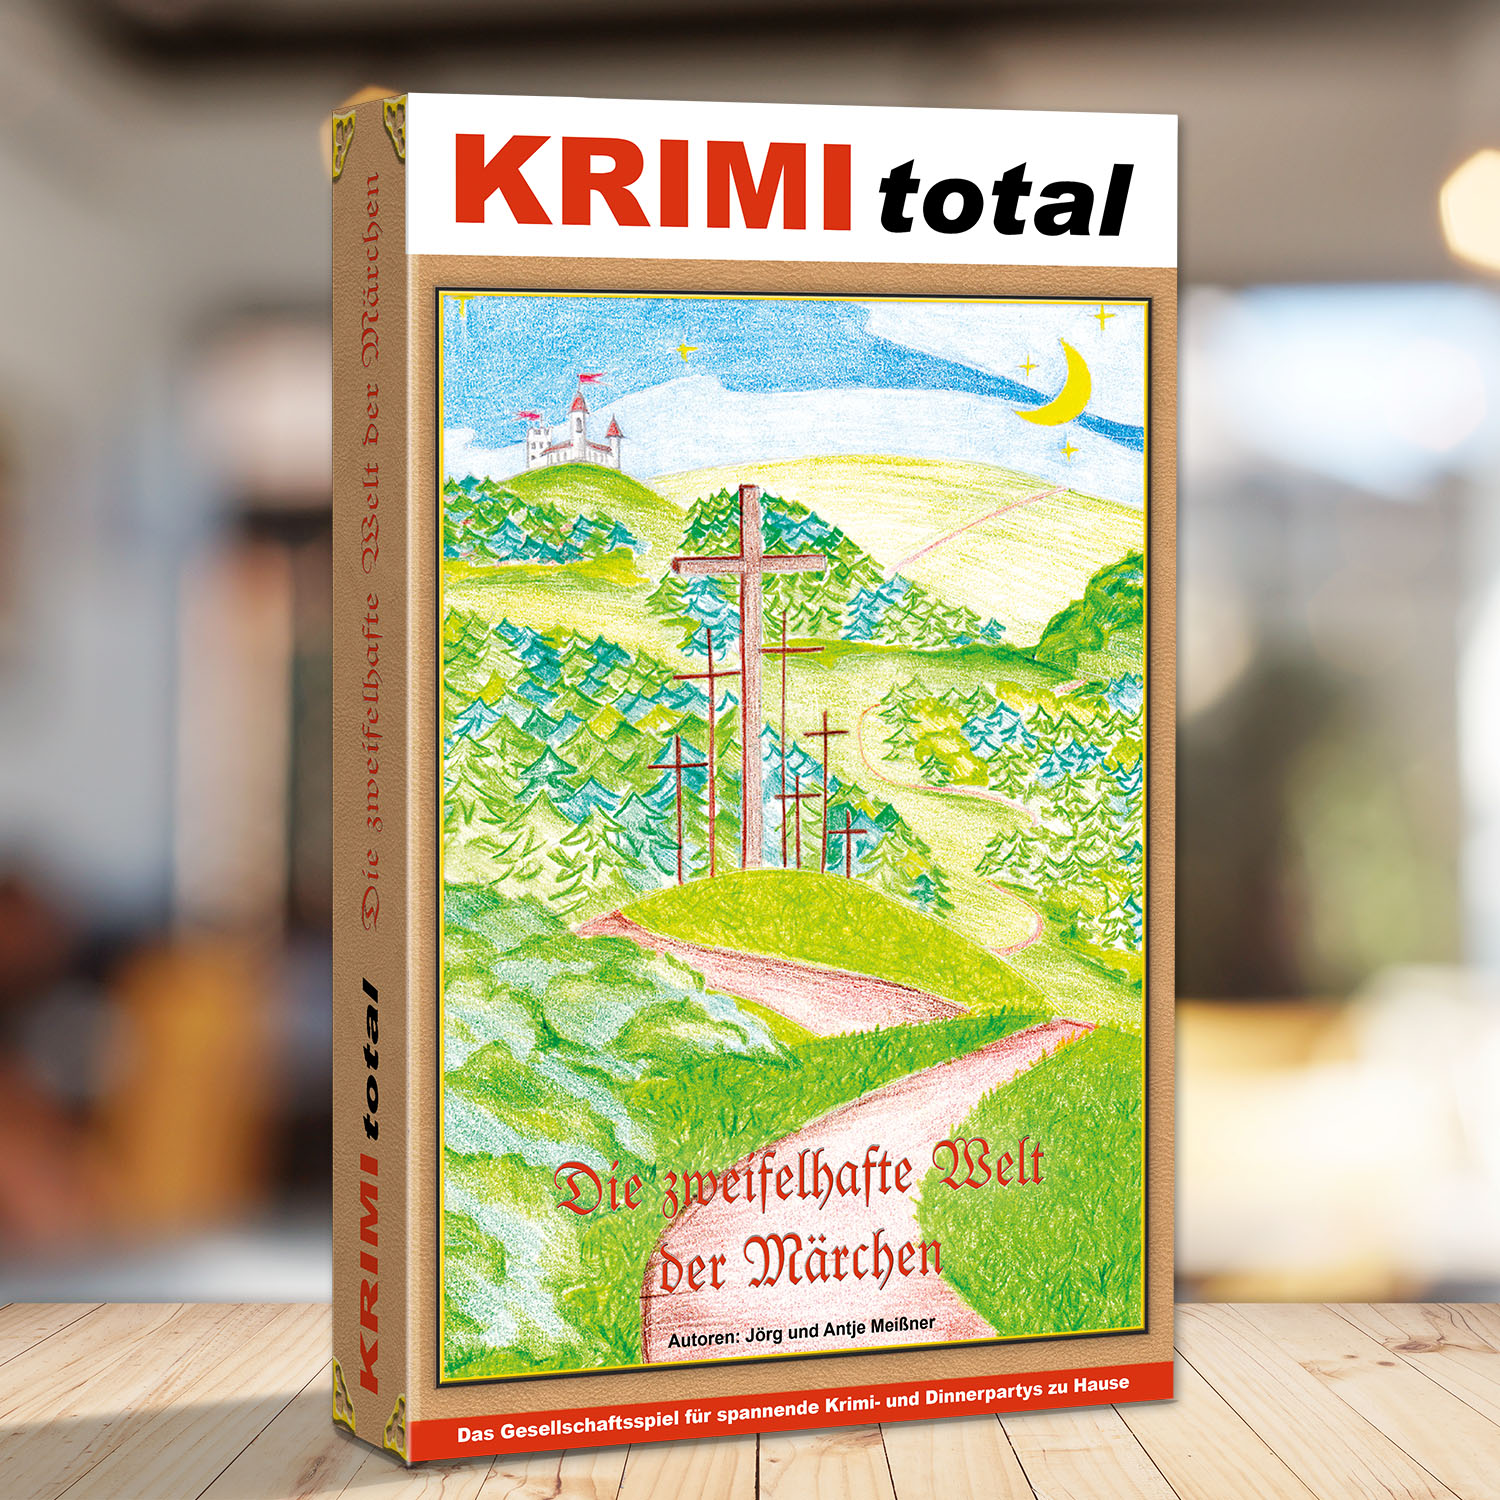 Abbildung eines Spielkartons des Krimispiels "KRIMI total - Die zweifelhafte Welt der Märchen"